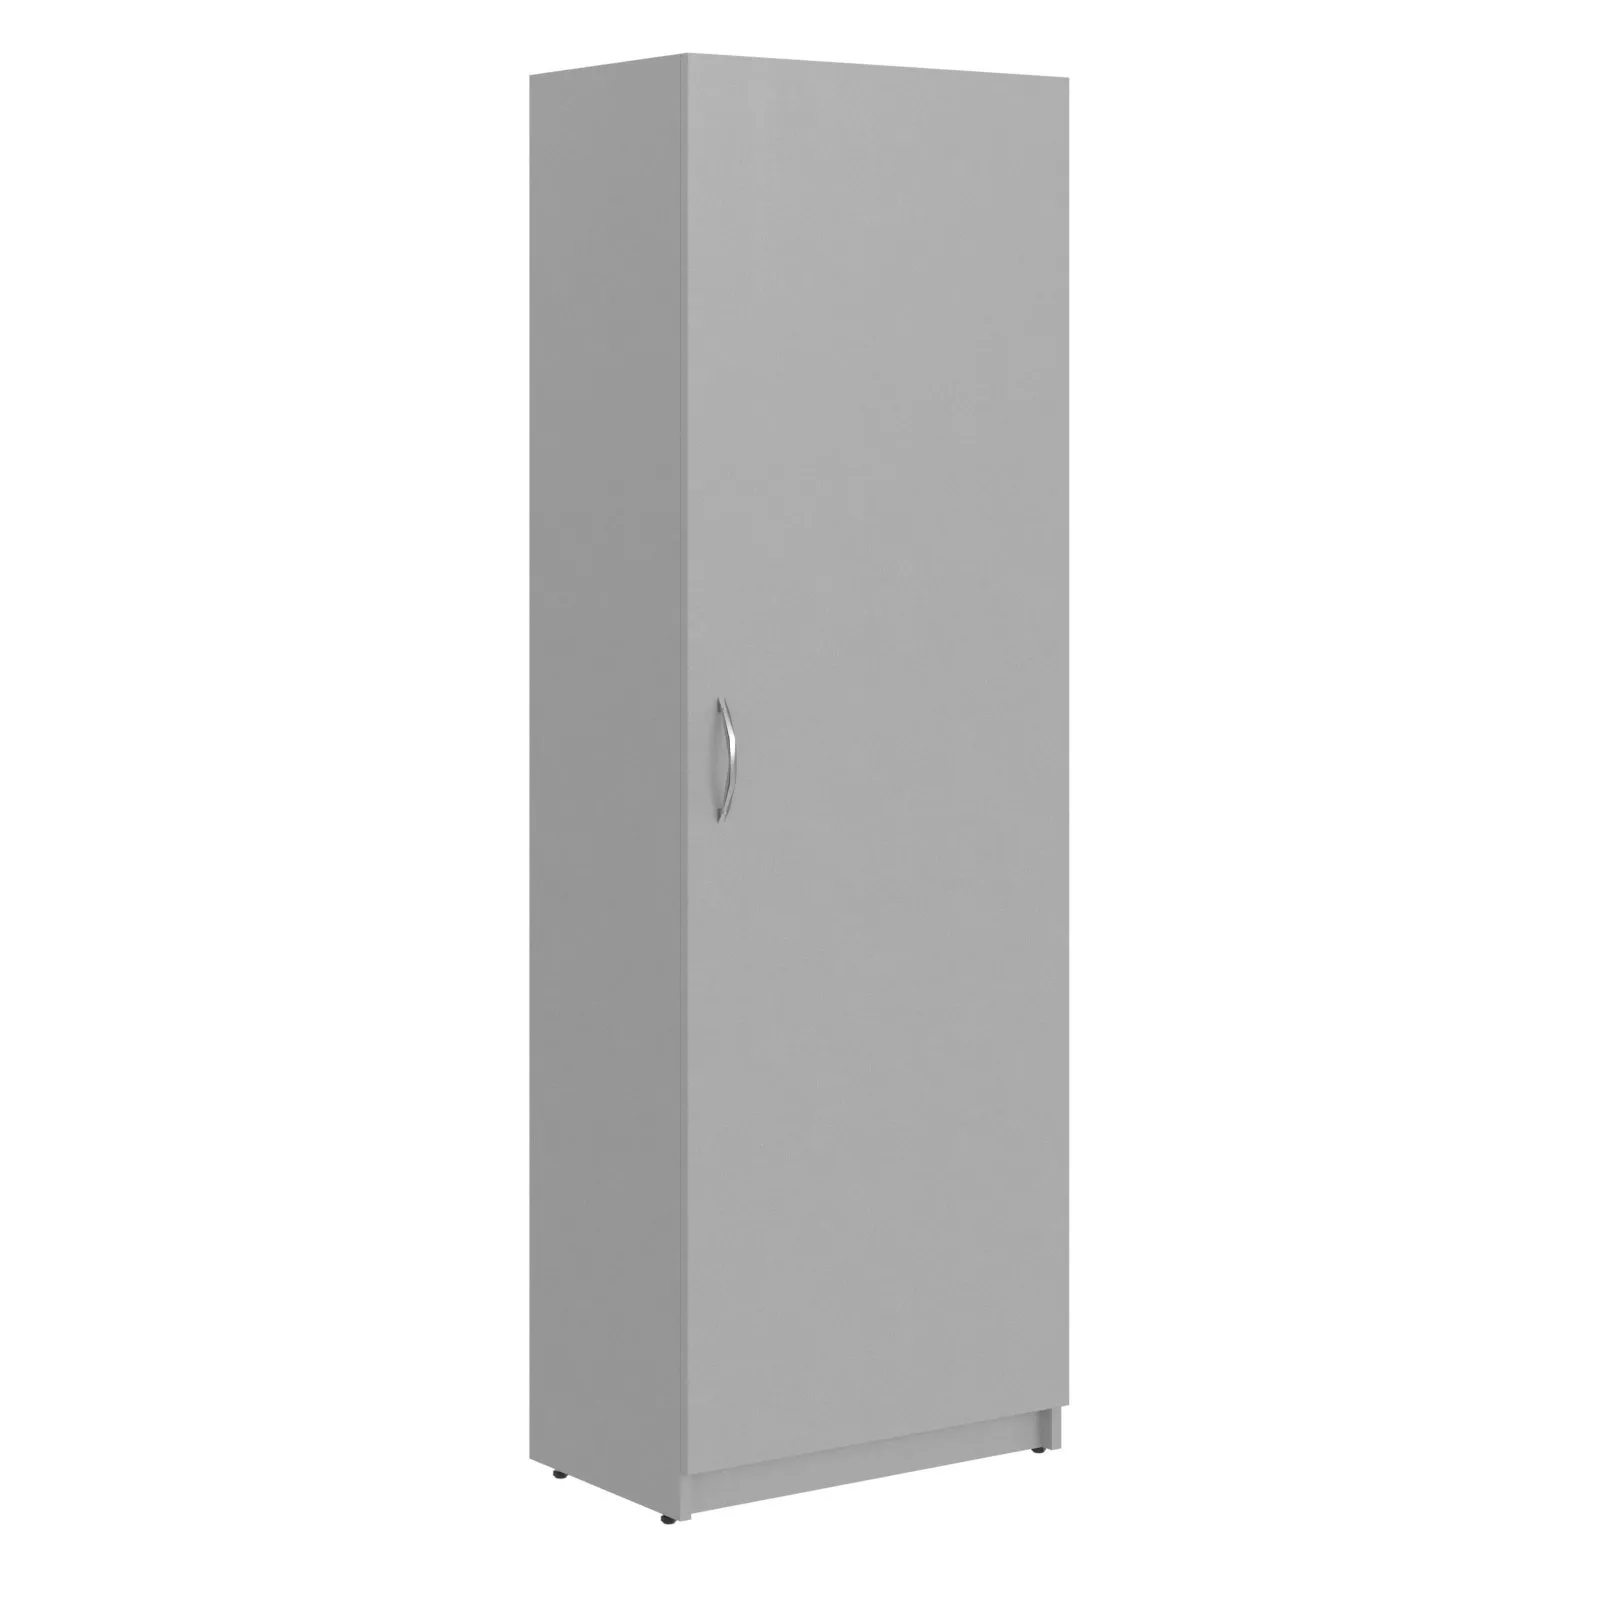 Шкаф-гардероб однодверный SIMPLE SRW 60